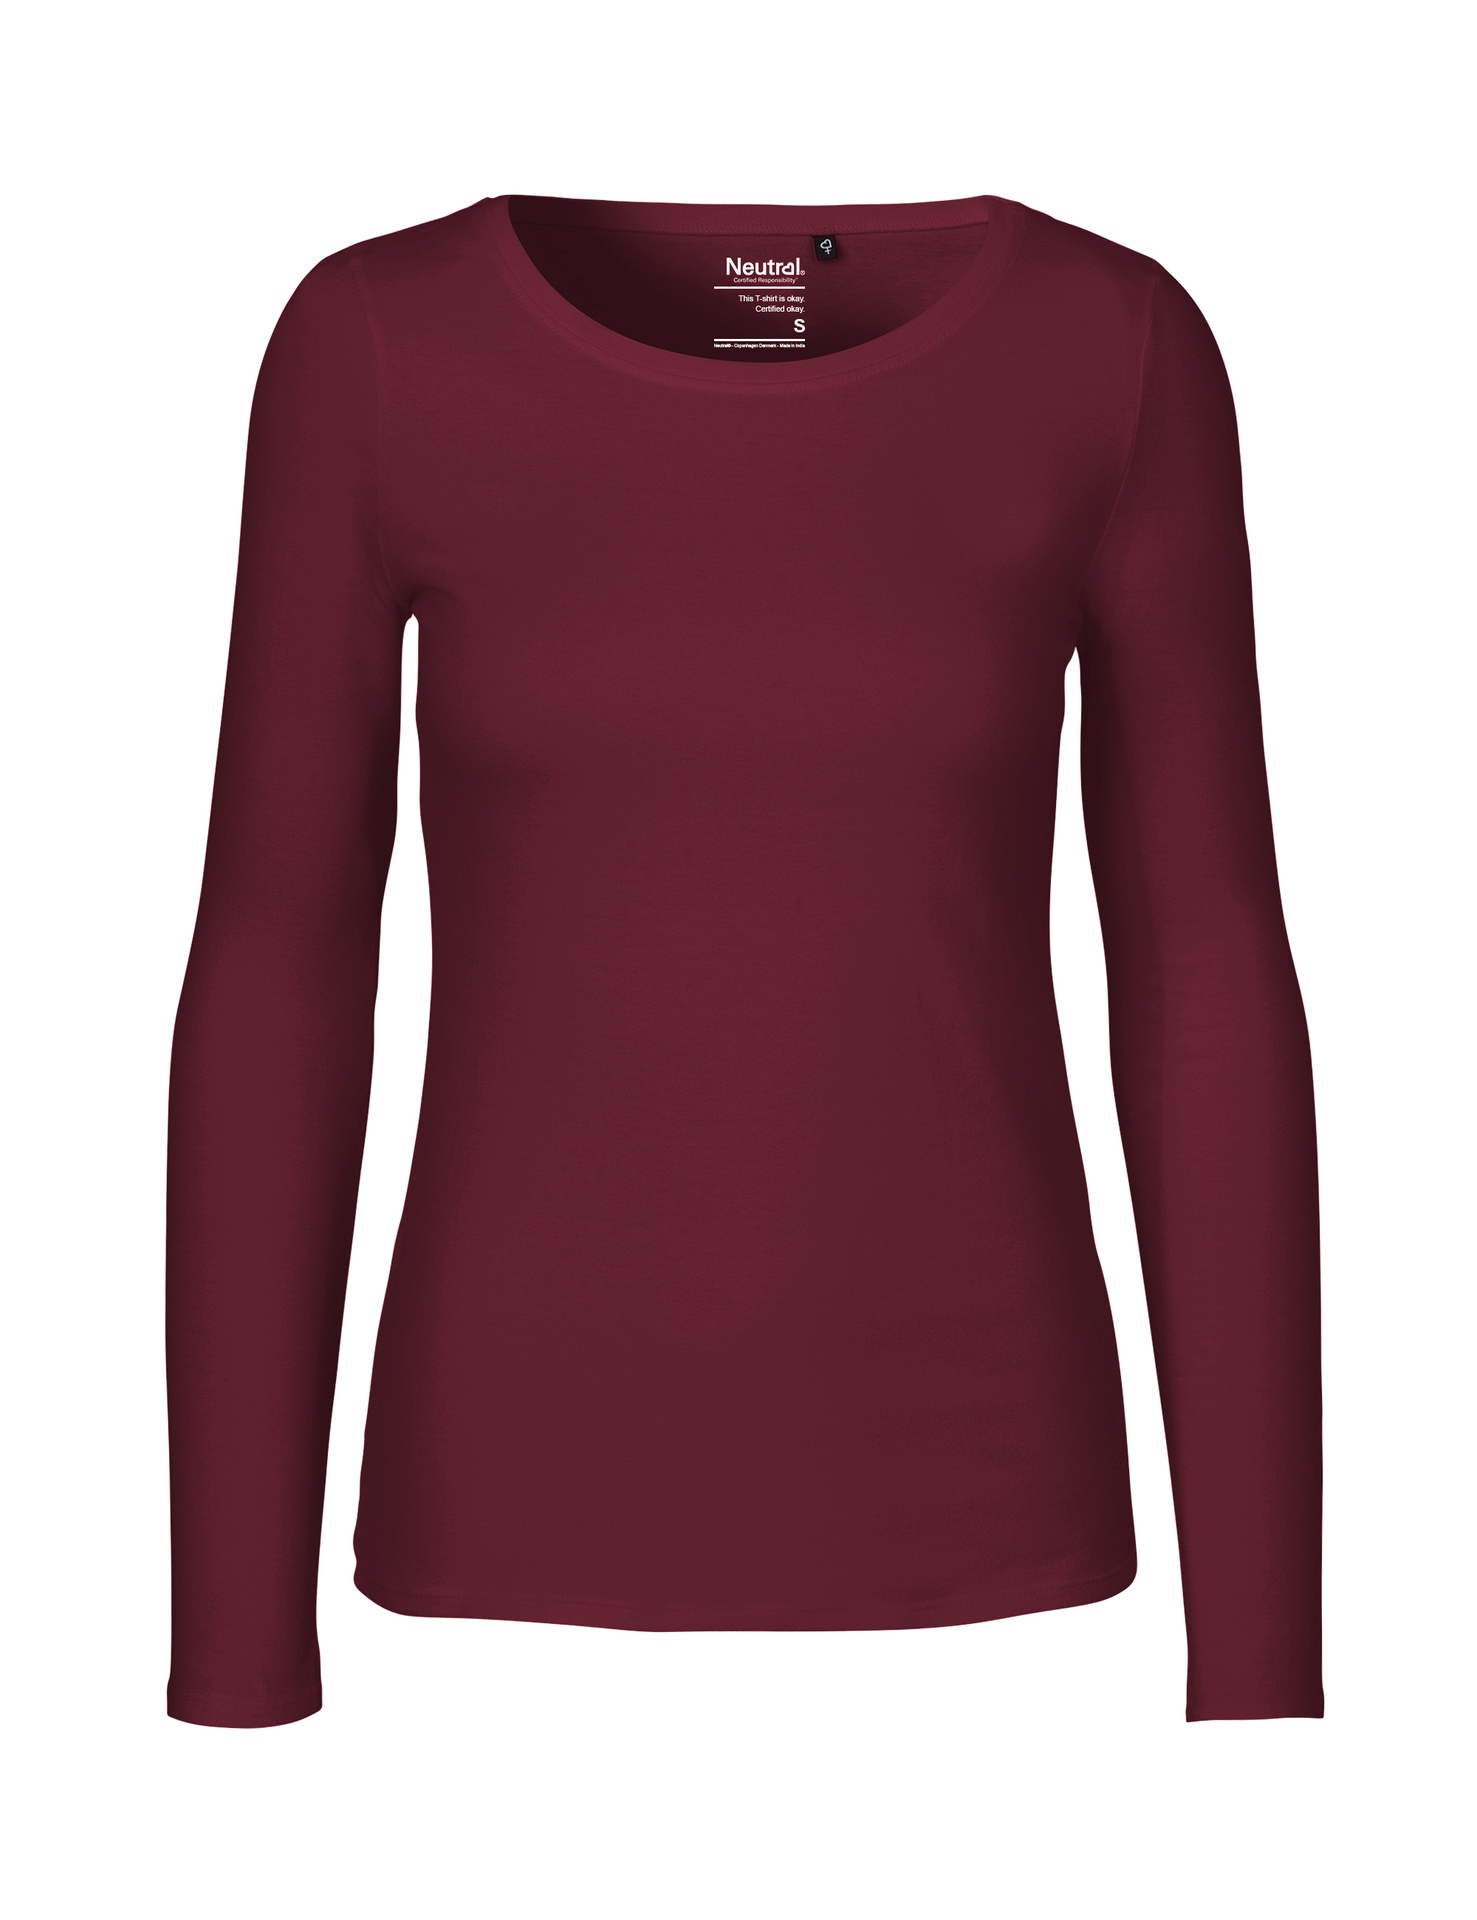 [PR/04705] Ladies Long Sleeve T-Shirt (Bordeaux 26, XS)